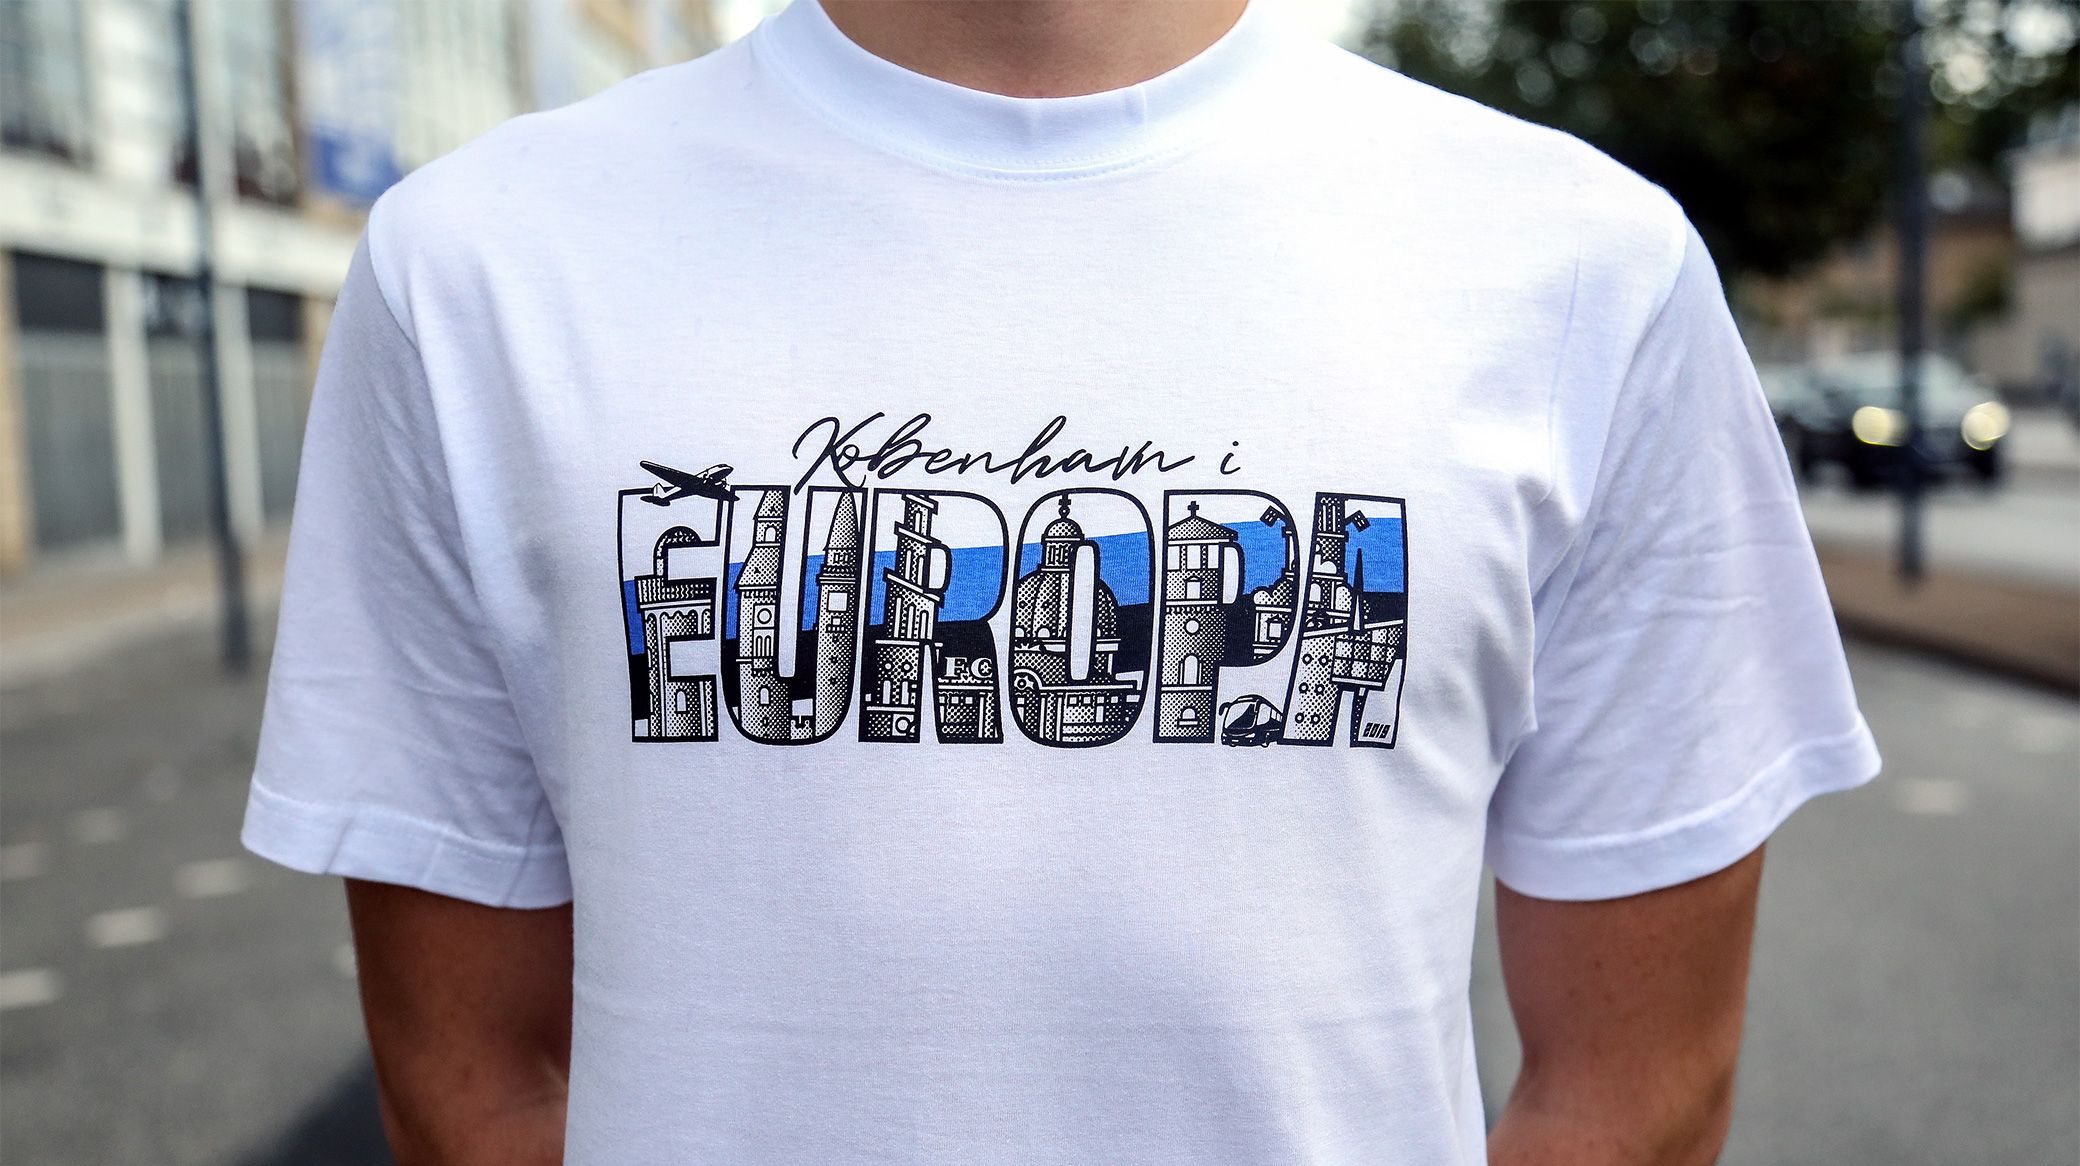 Europa T-shirt fra Fanshoppen